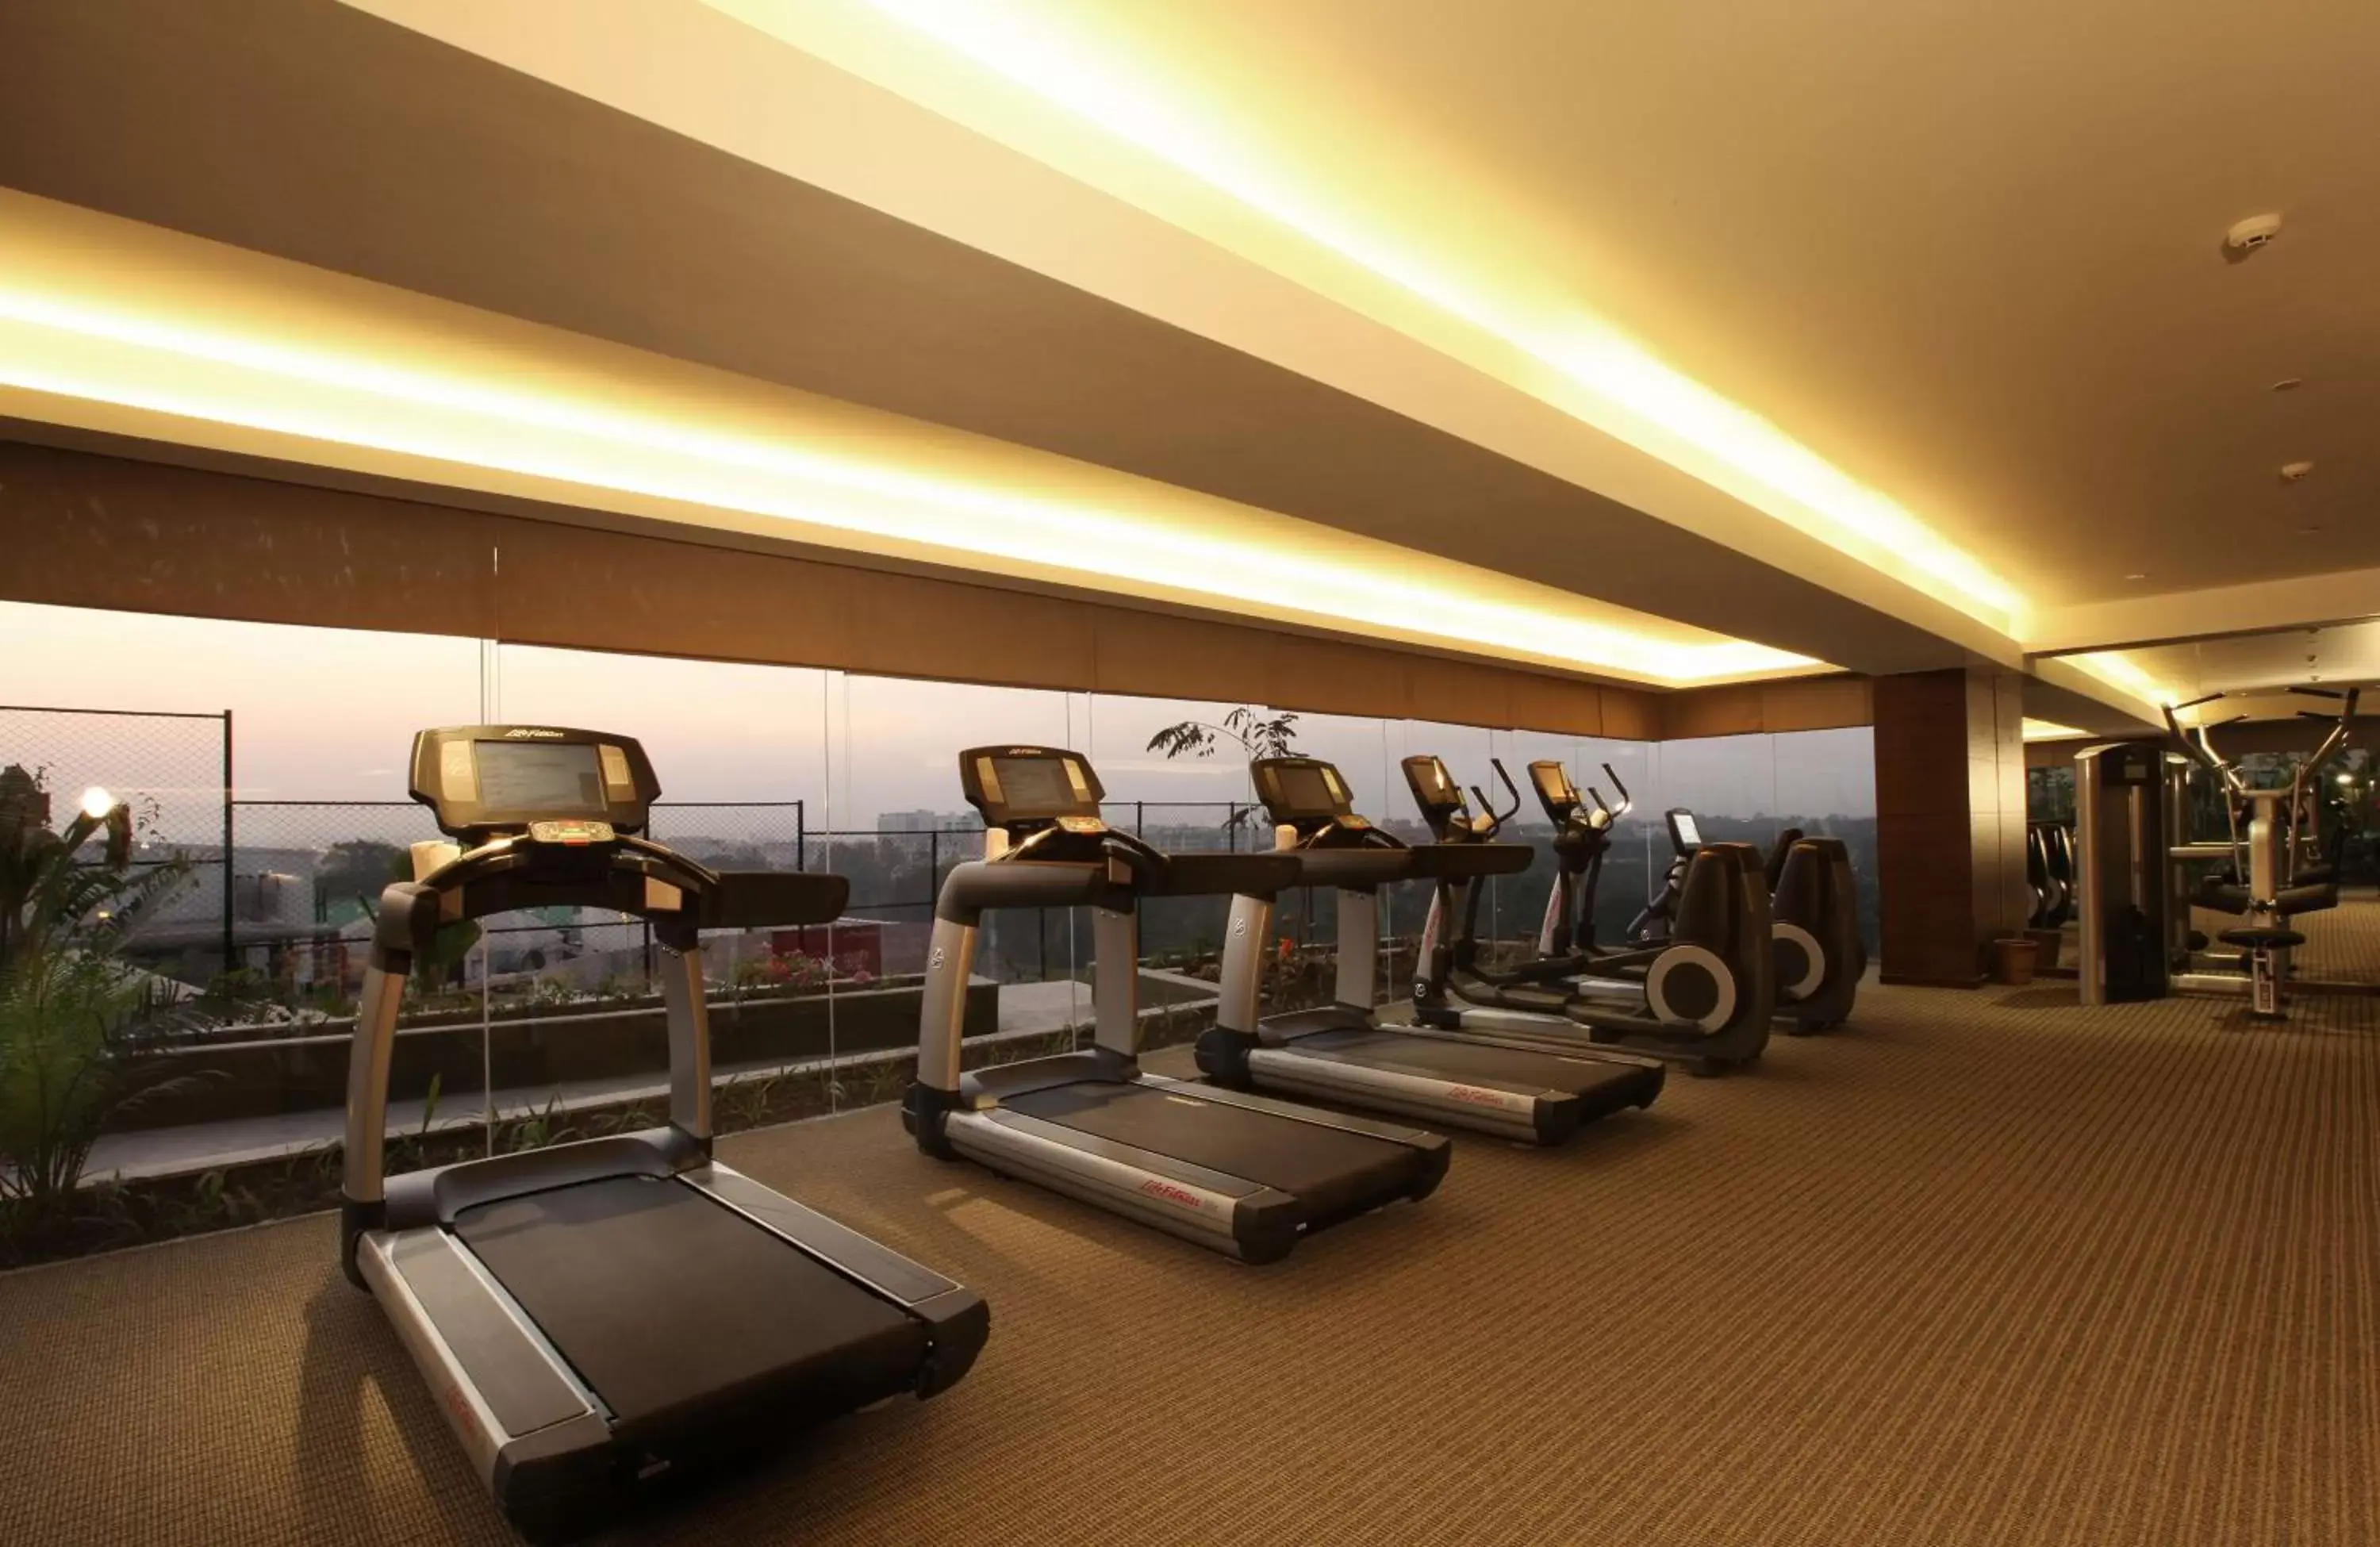 Fitness centre/facilities, Fitness Center/Facilities in Hyatt Pune